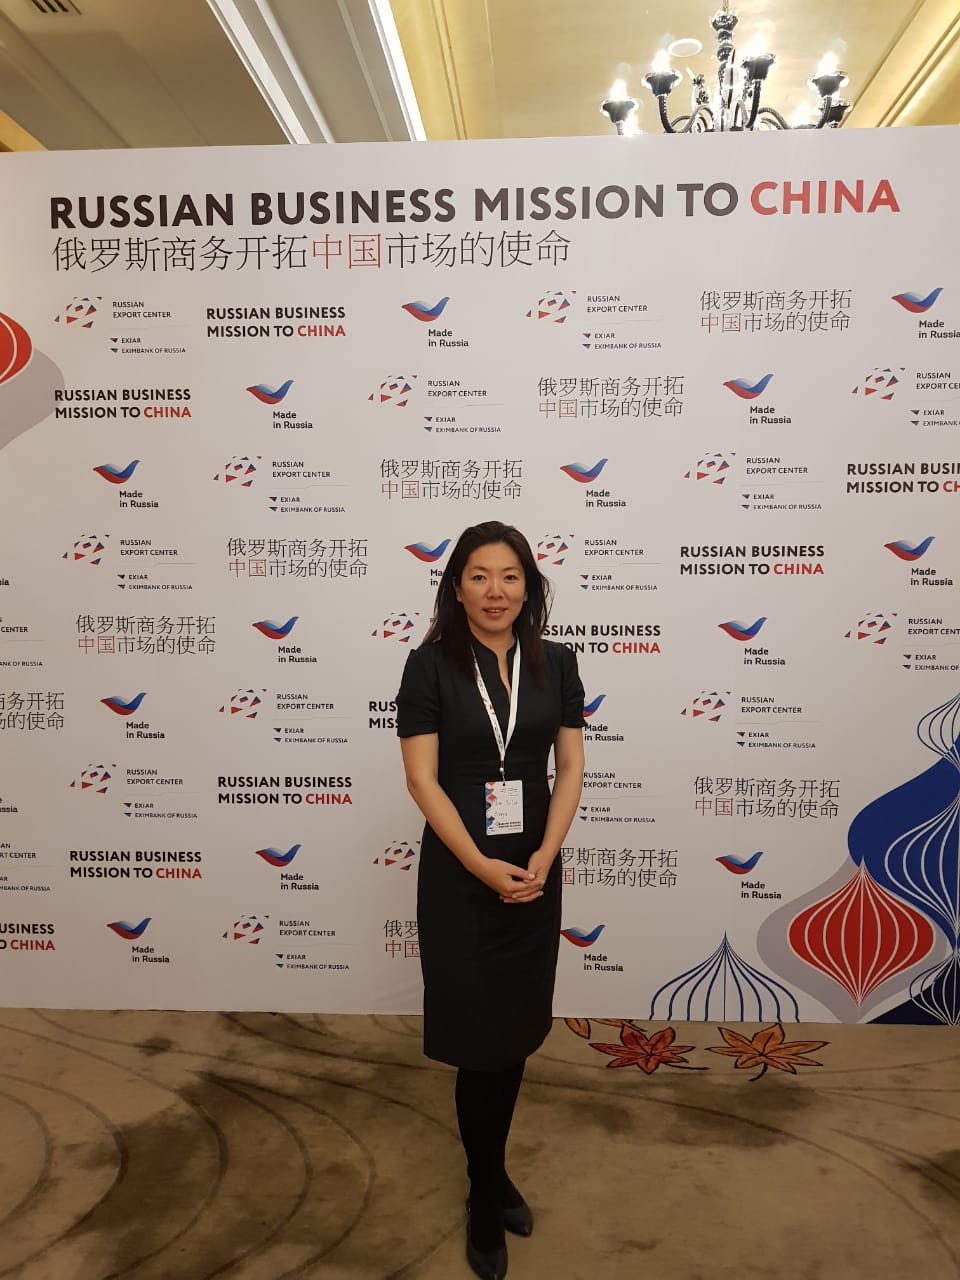 ООО НПО «Броня» в международной бизнес-миссии Российских компаний в рамках АО «Российский экспортный центр» в Китайской Народной Республике